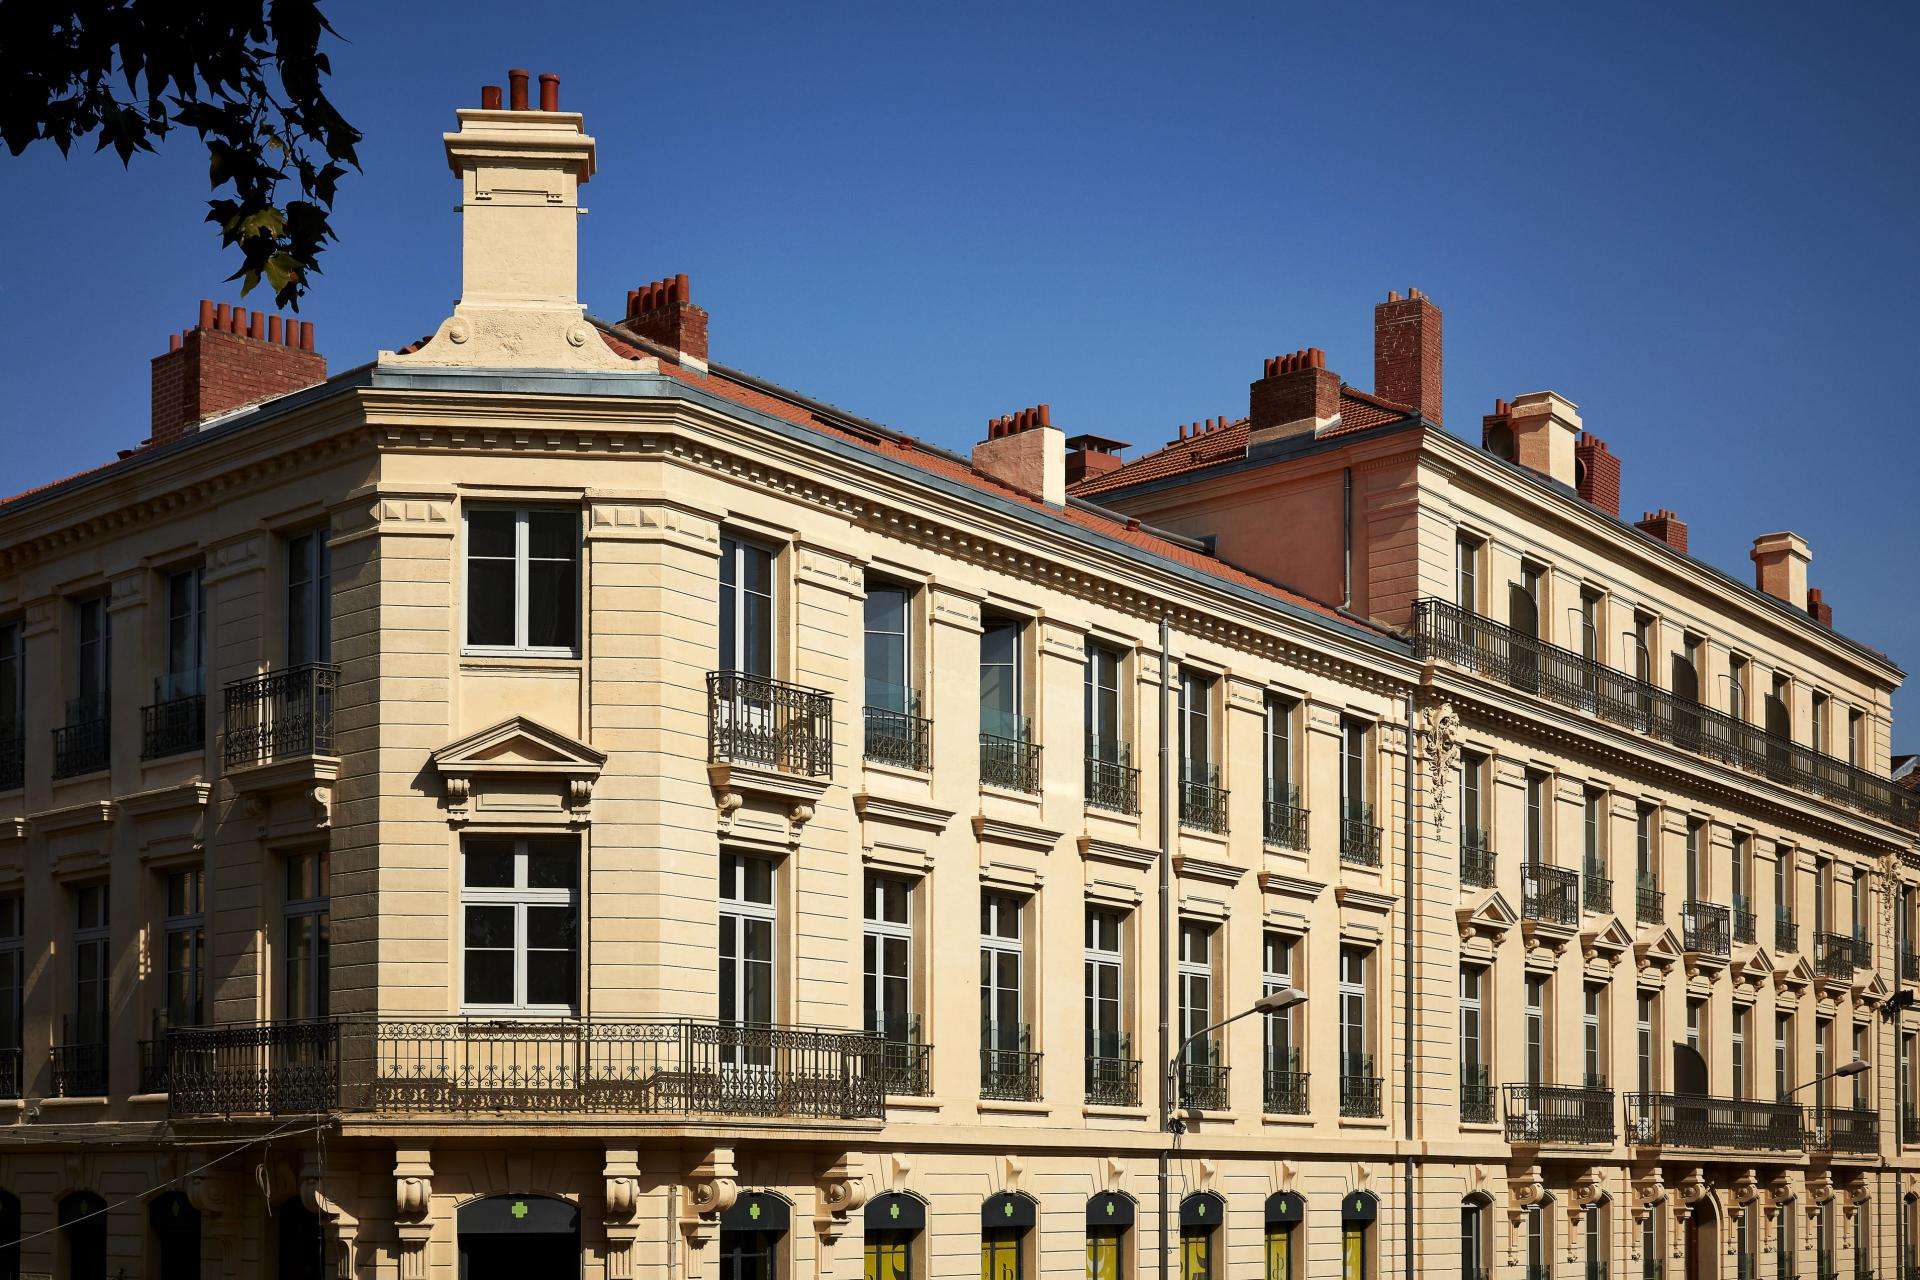 Hôtel De Cambis - Facade